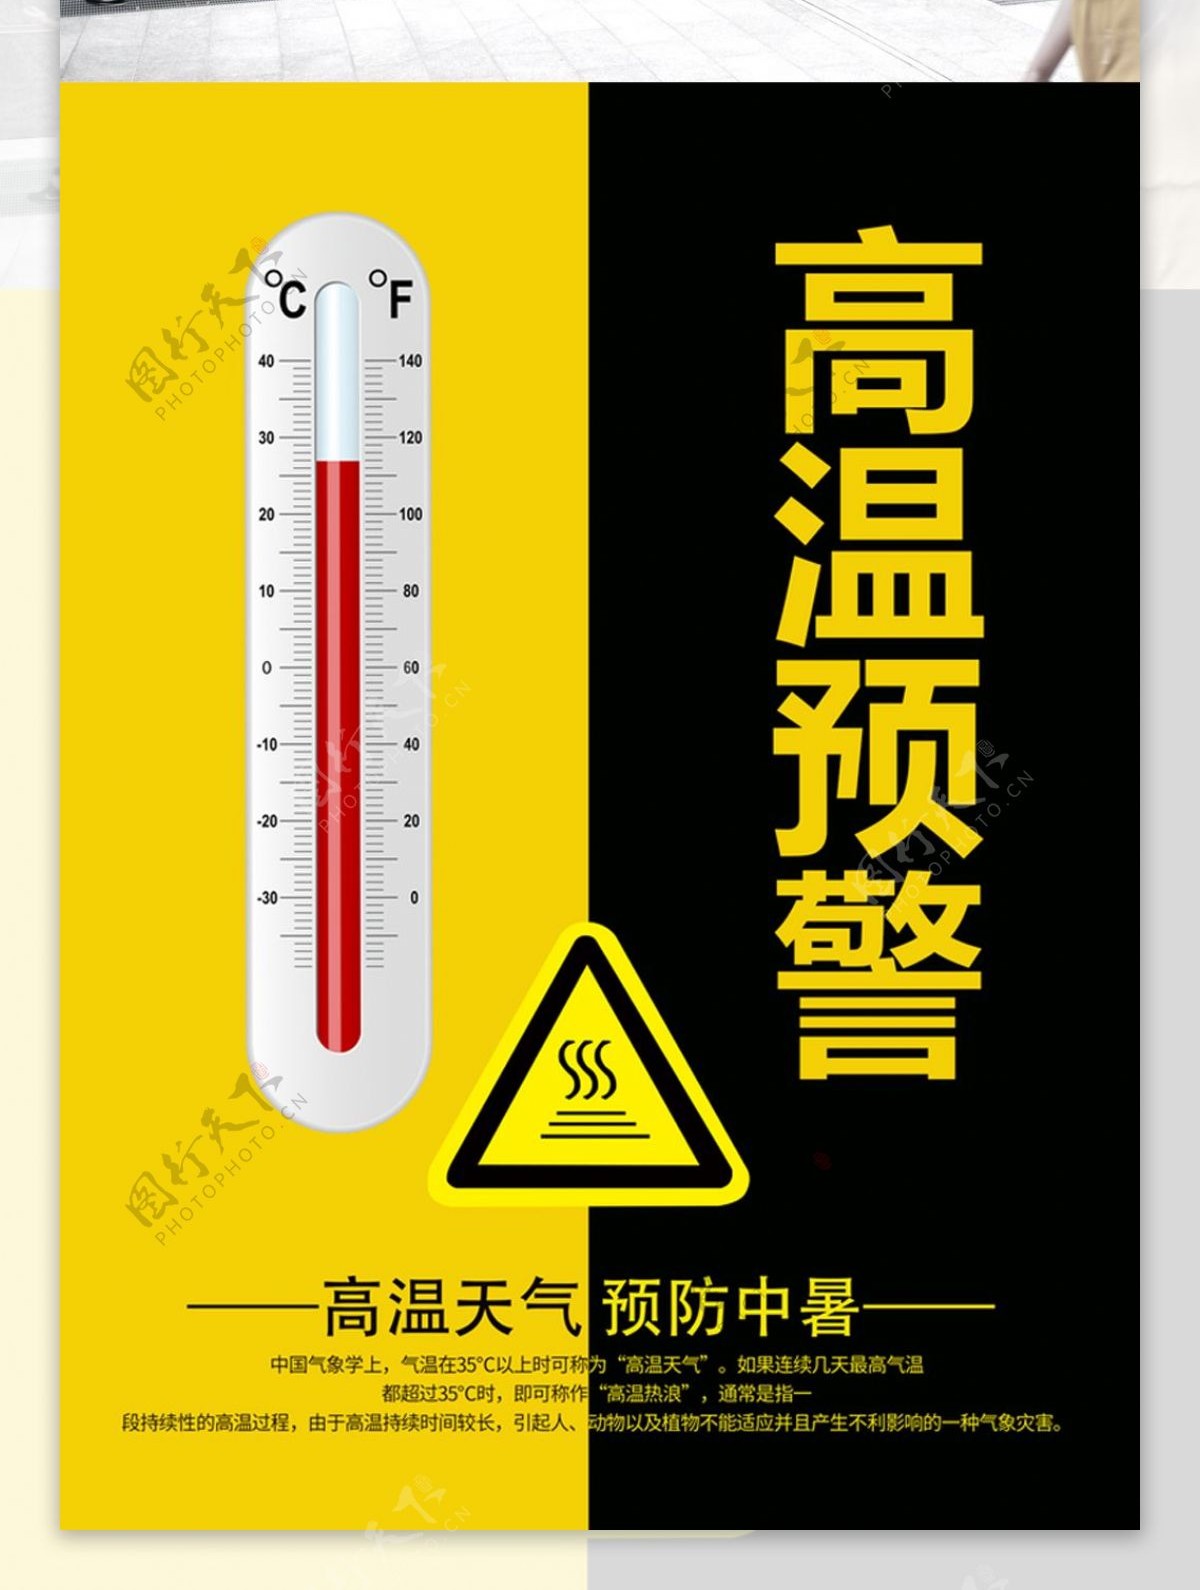 黄黑色简约大气高温预警海报